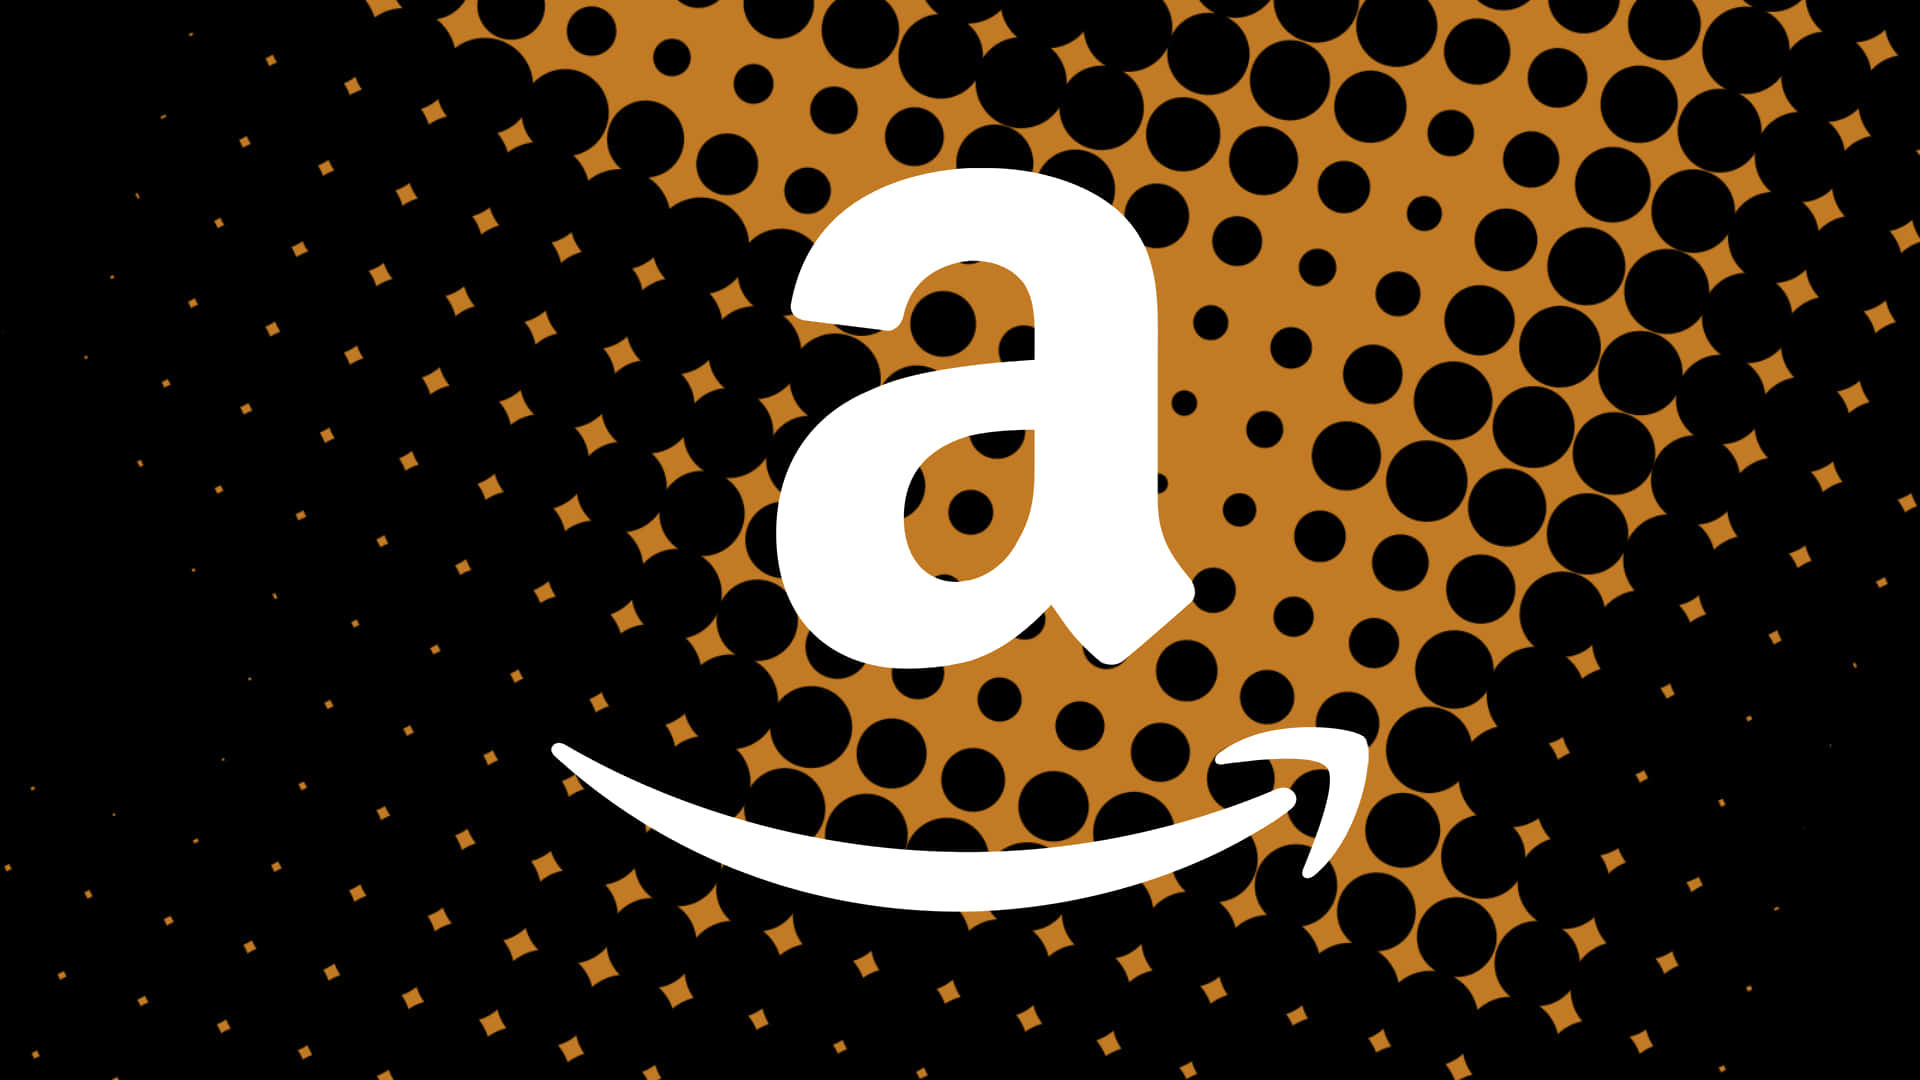 Logodi Amazon Uk In Forma Di Grafico A Punti Sfondo